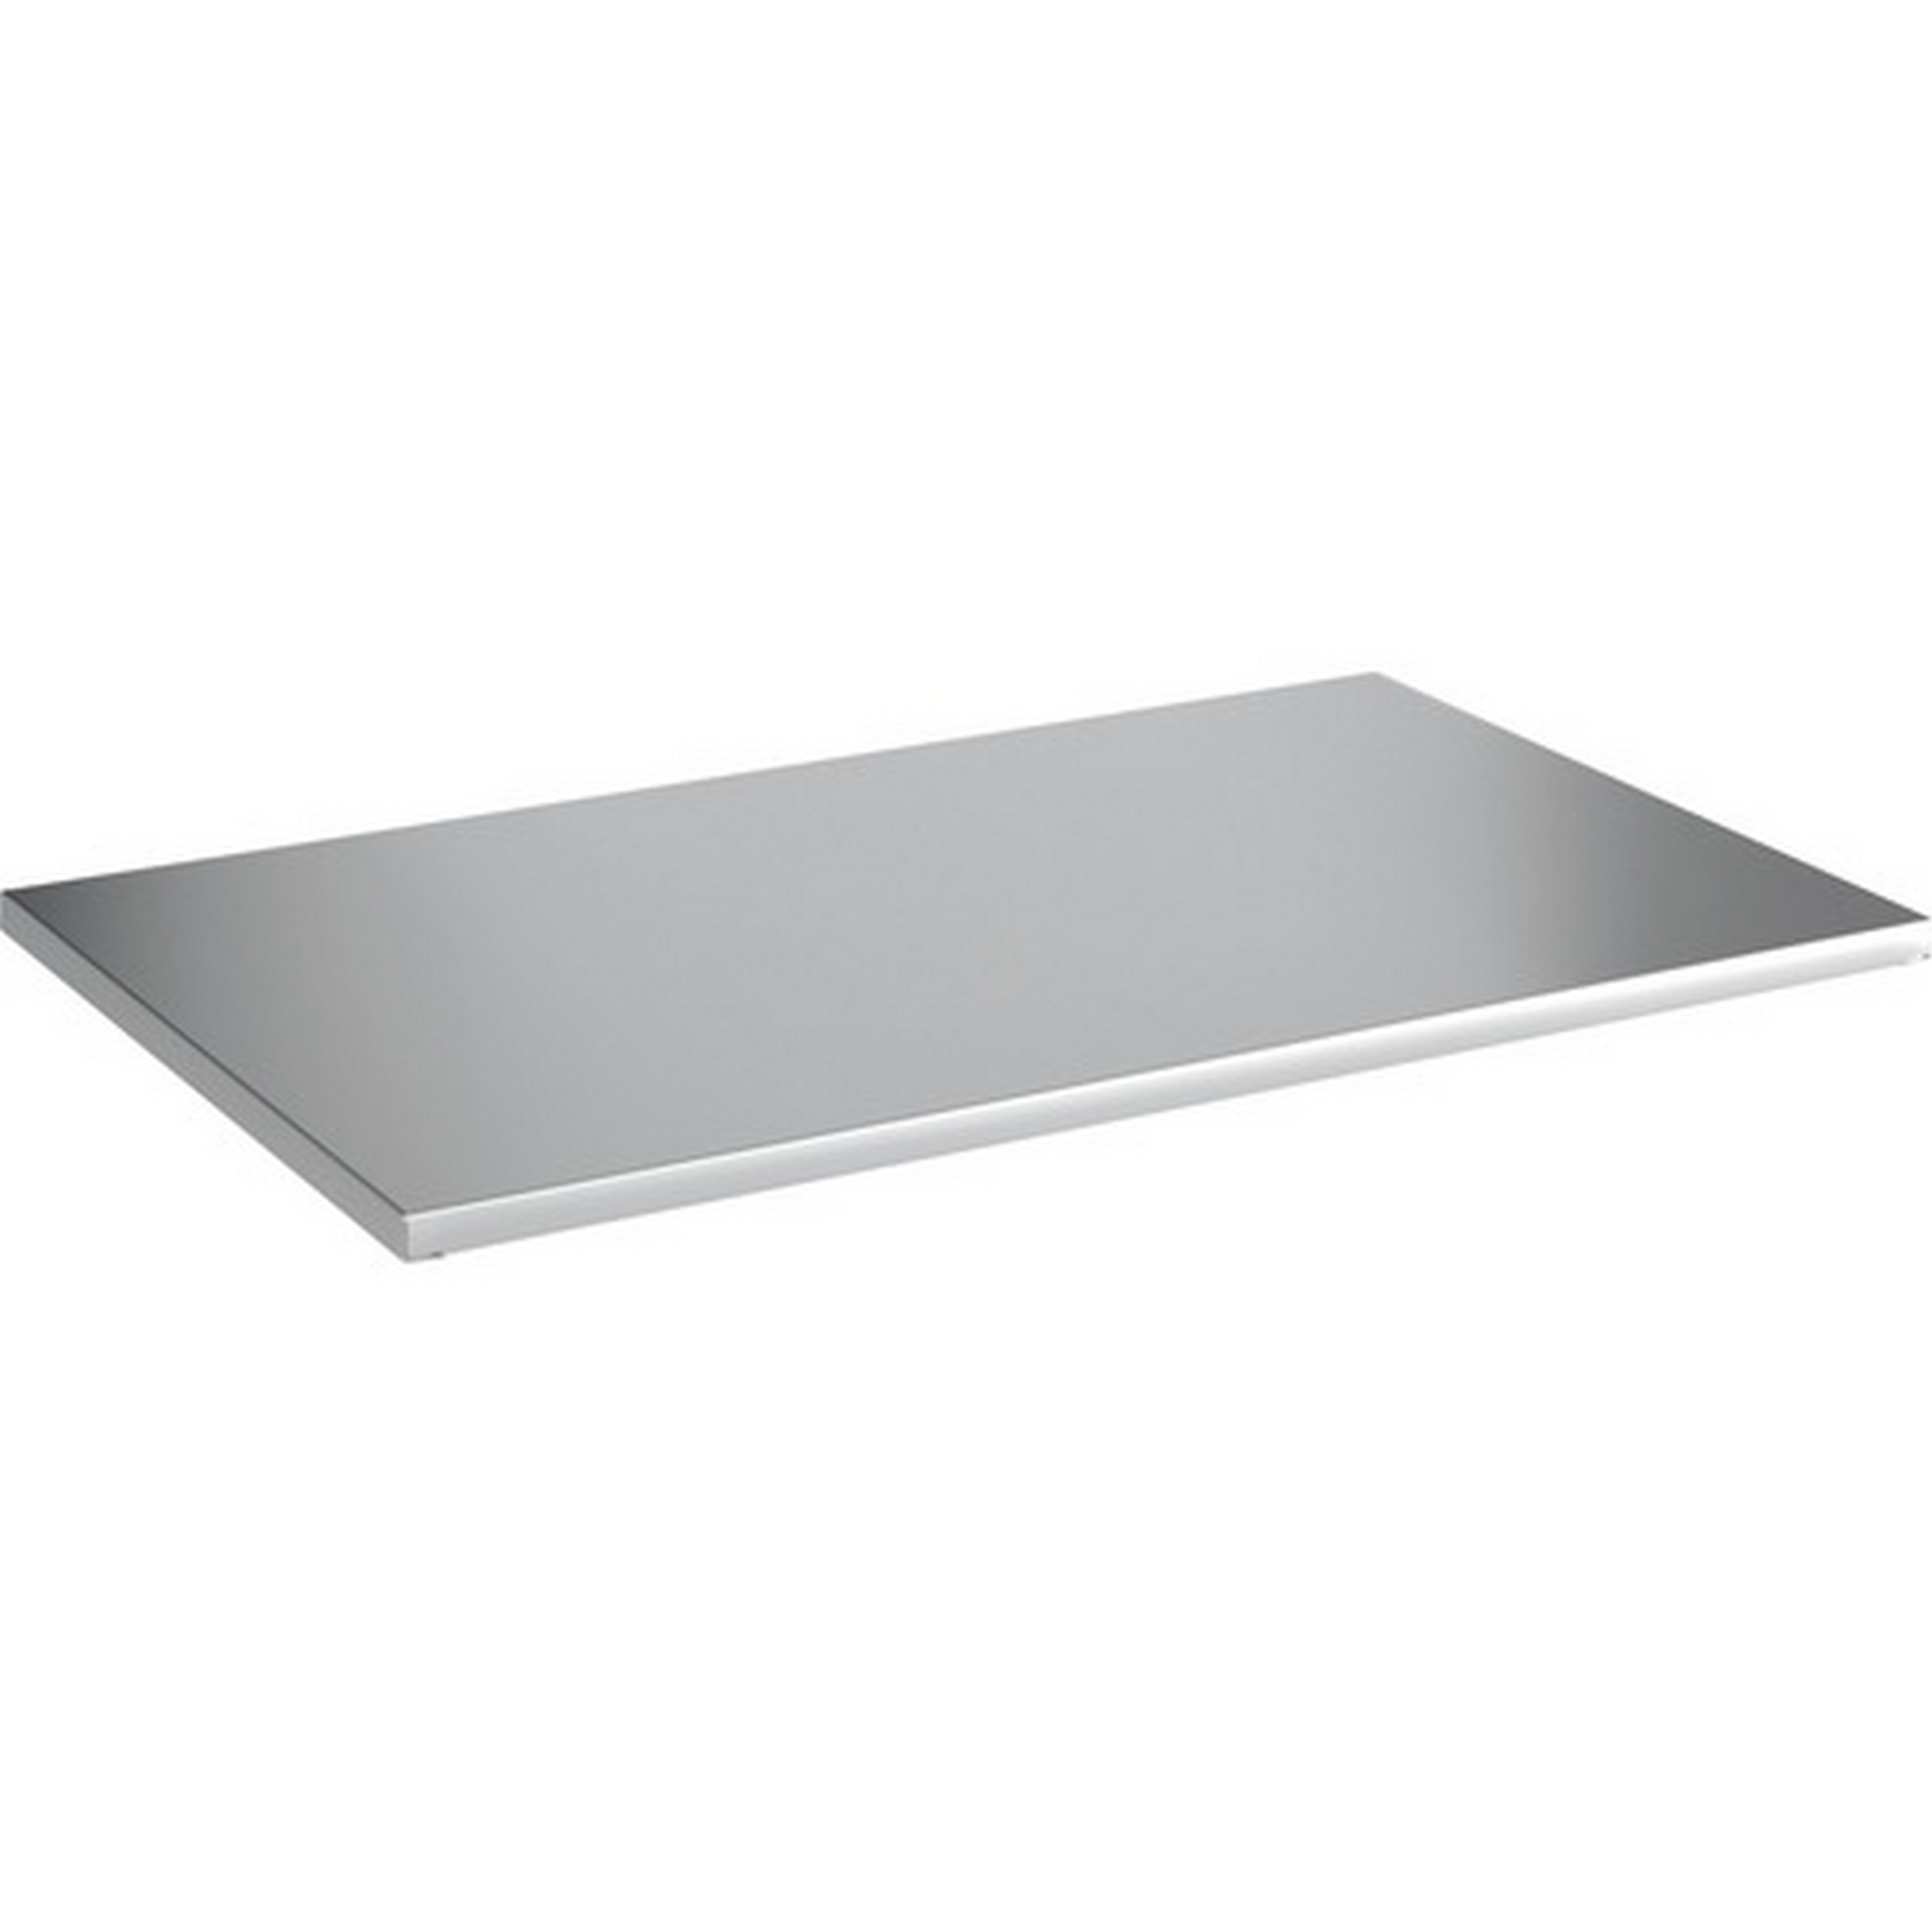 Stecksystem-Regalboden Metall 60 x 50 cm